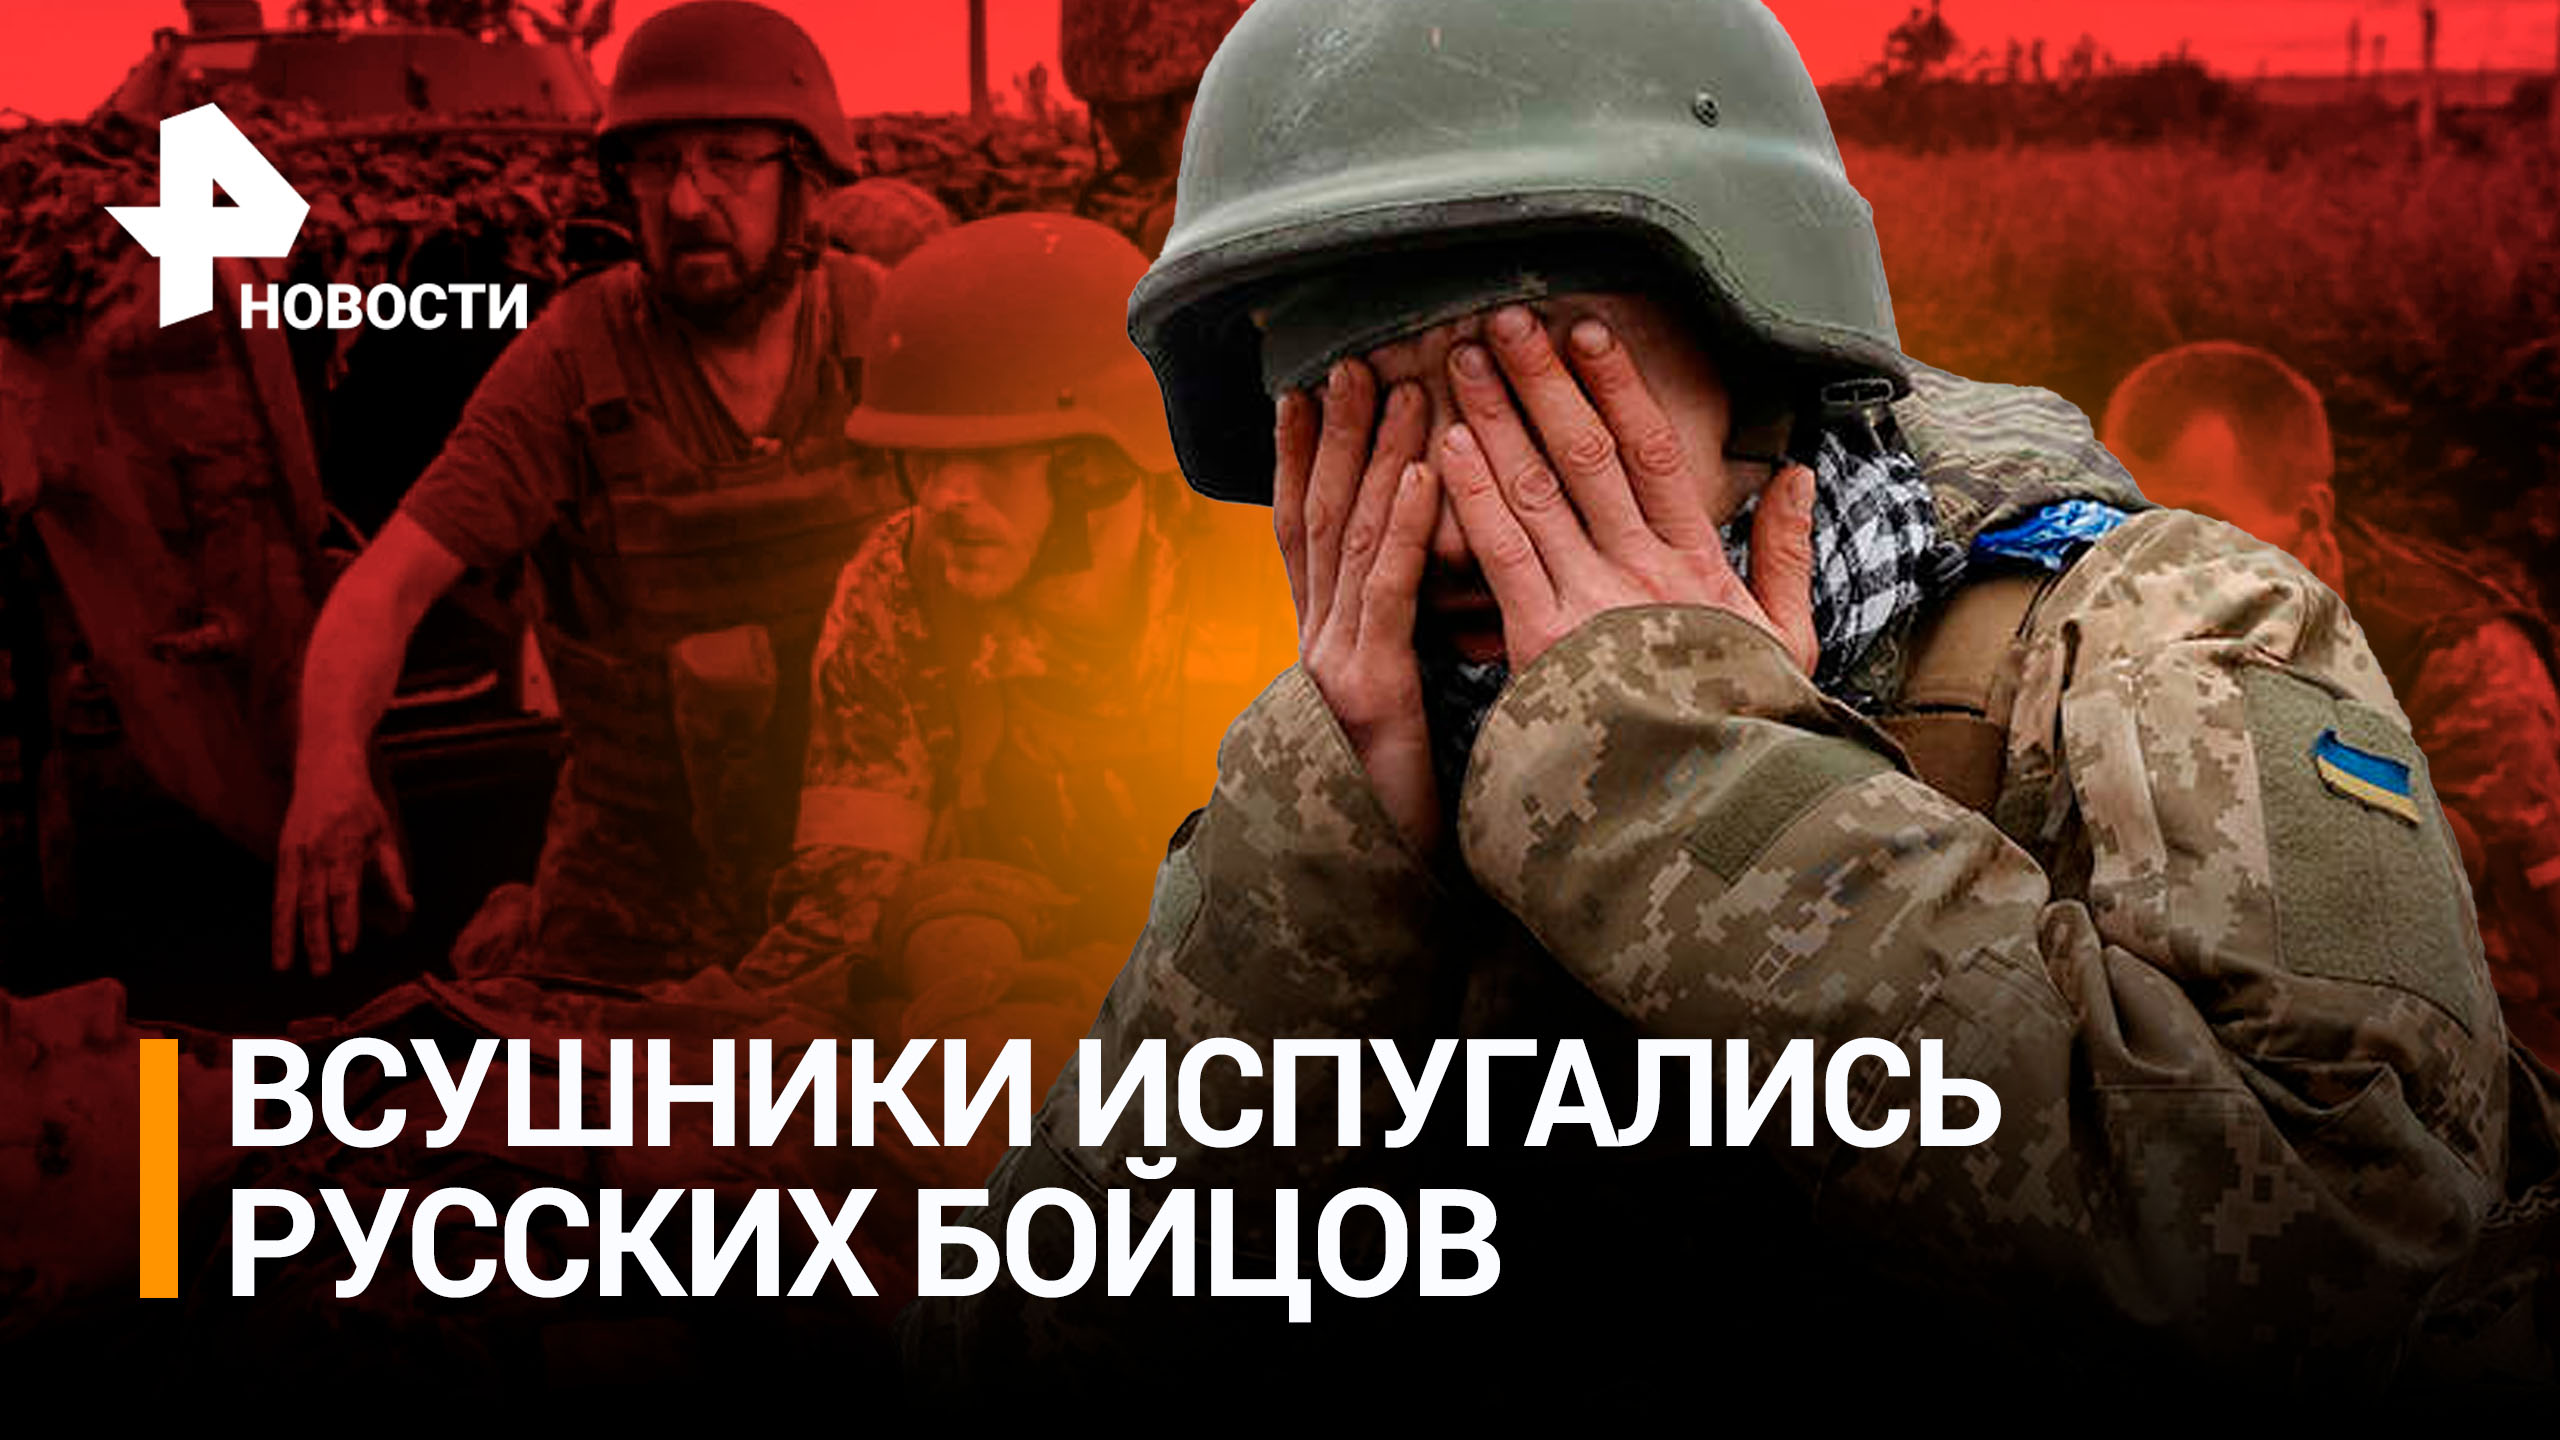 "Шесть «двухсотых» лежит!": с боевиками расправились в Кременском лесу